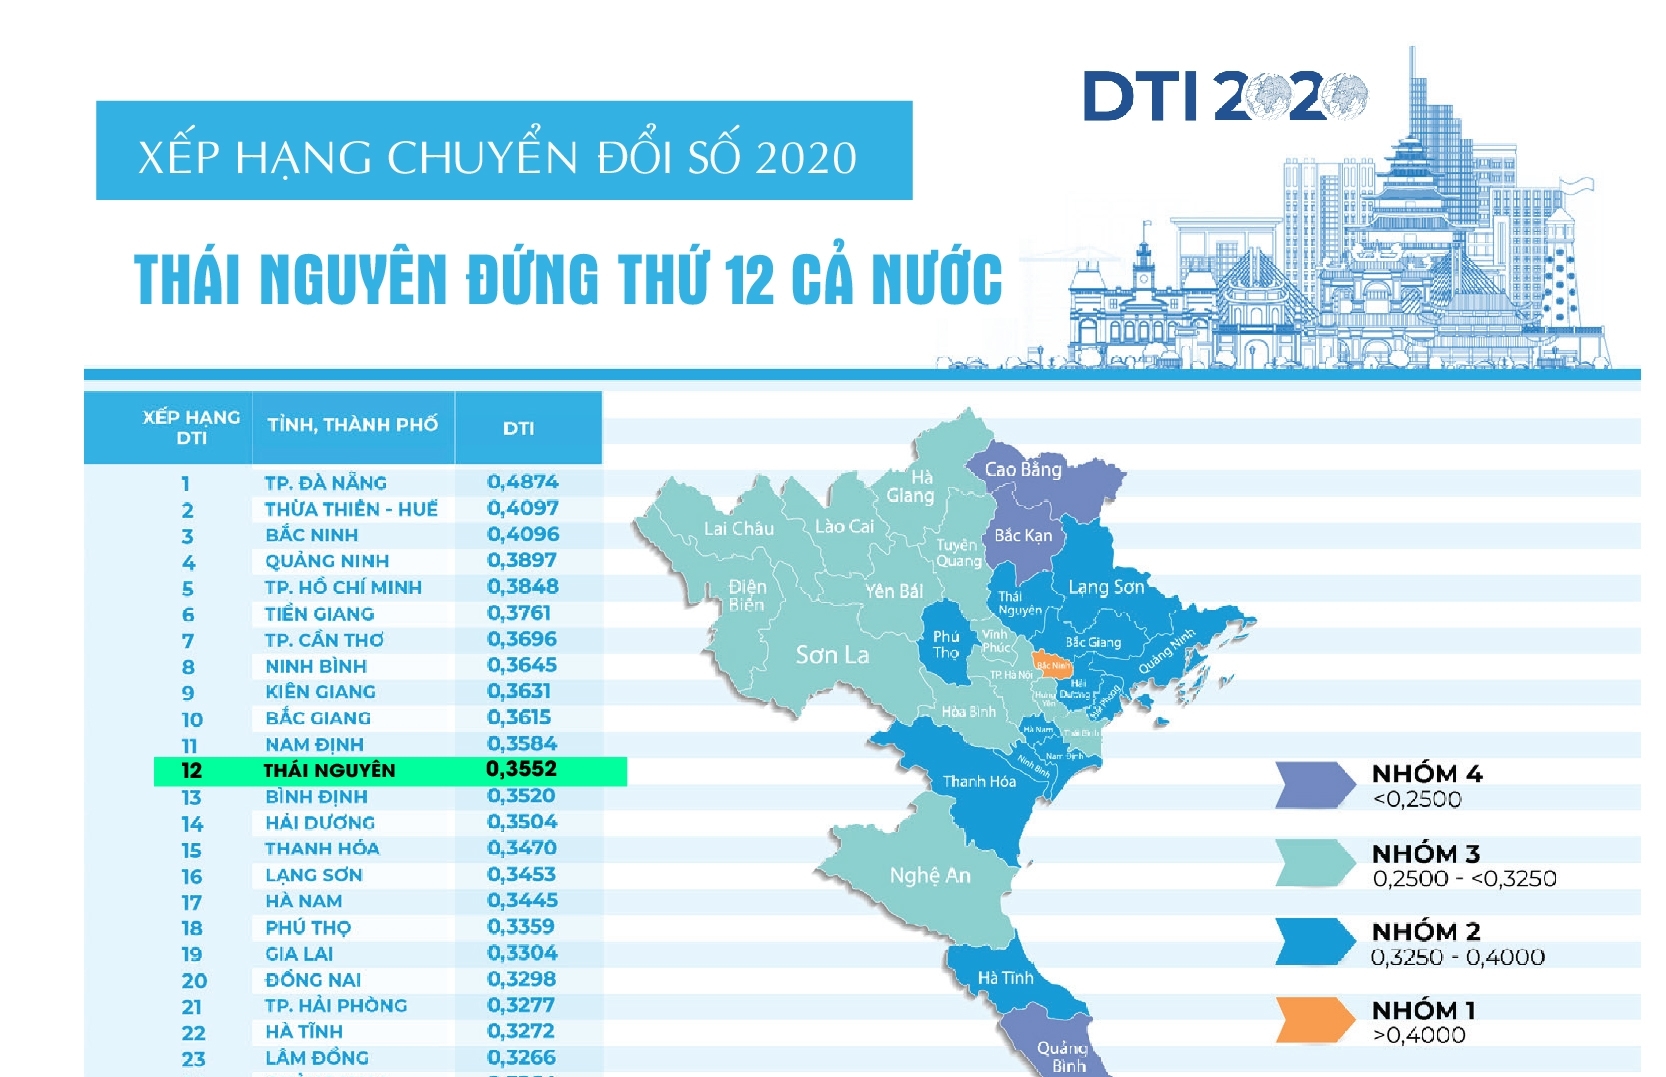 Xếp hạng chuyển đổi số 2020: Thái Nguyên đứng thứ 12 cả nước